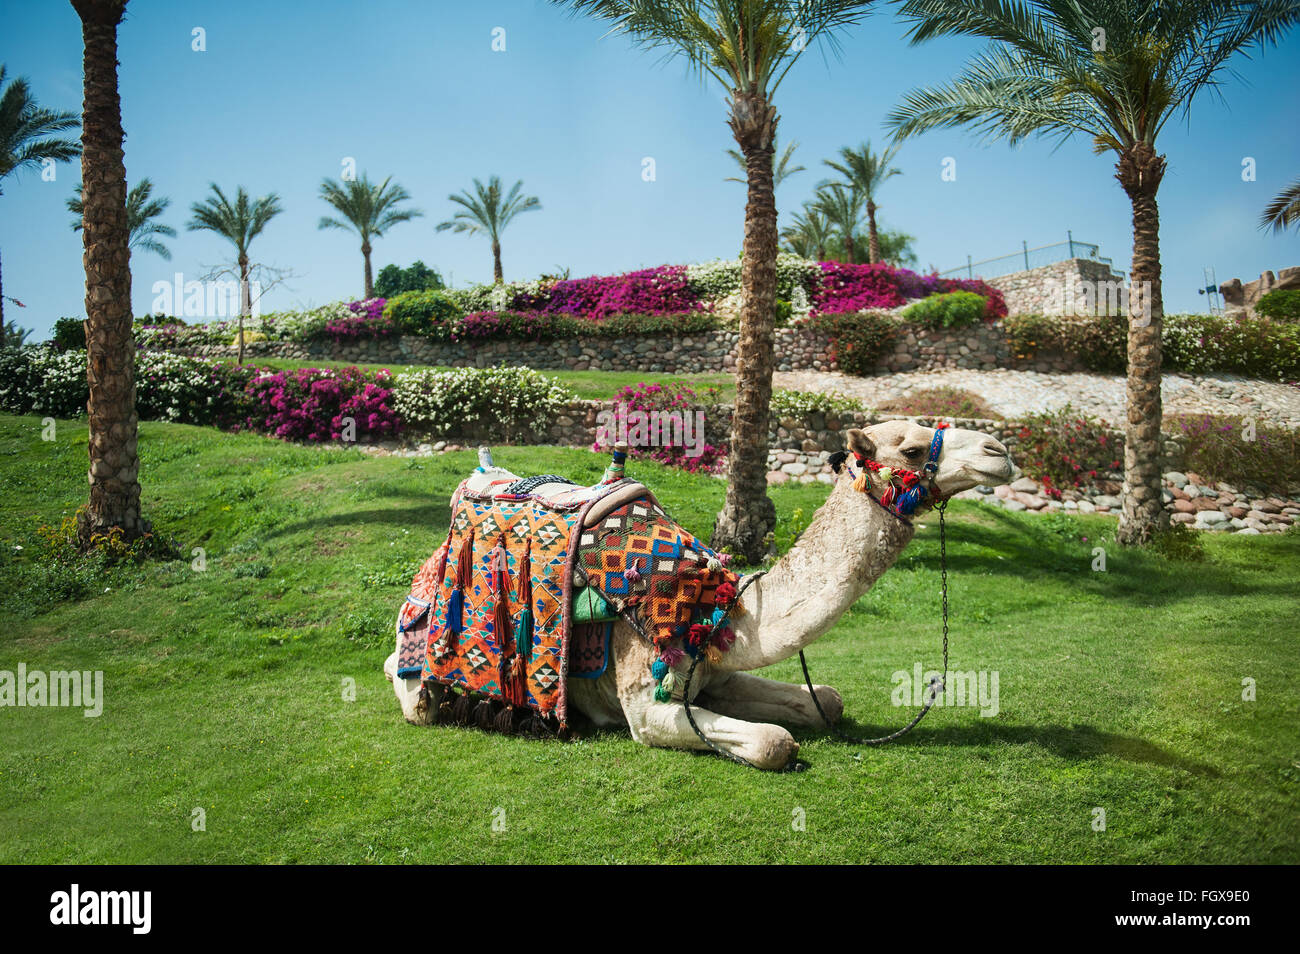 Camello acostado sobre la hierba cerca de palmeras Foto de stock